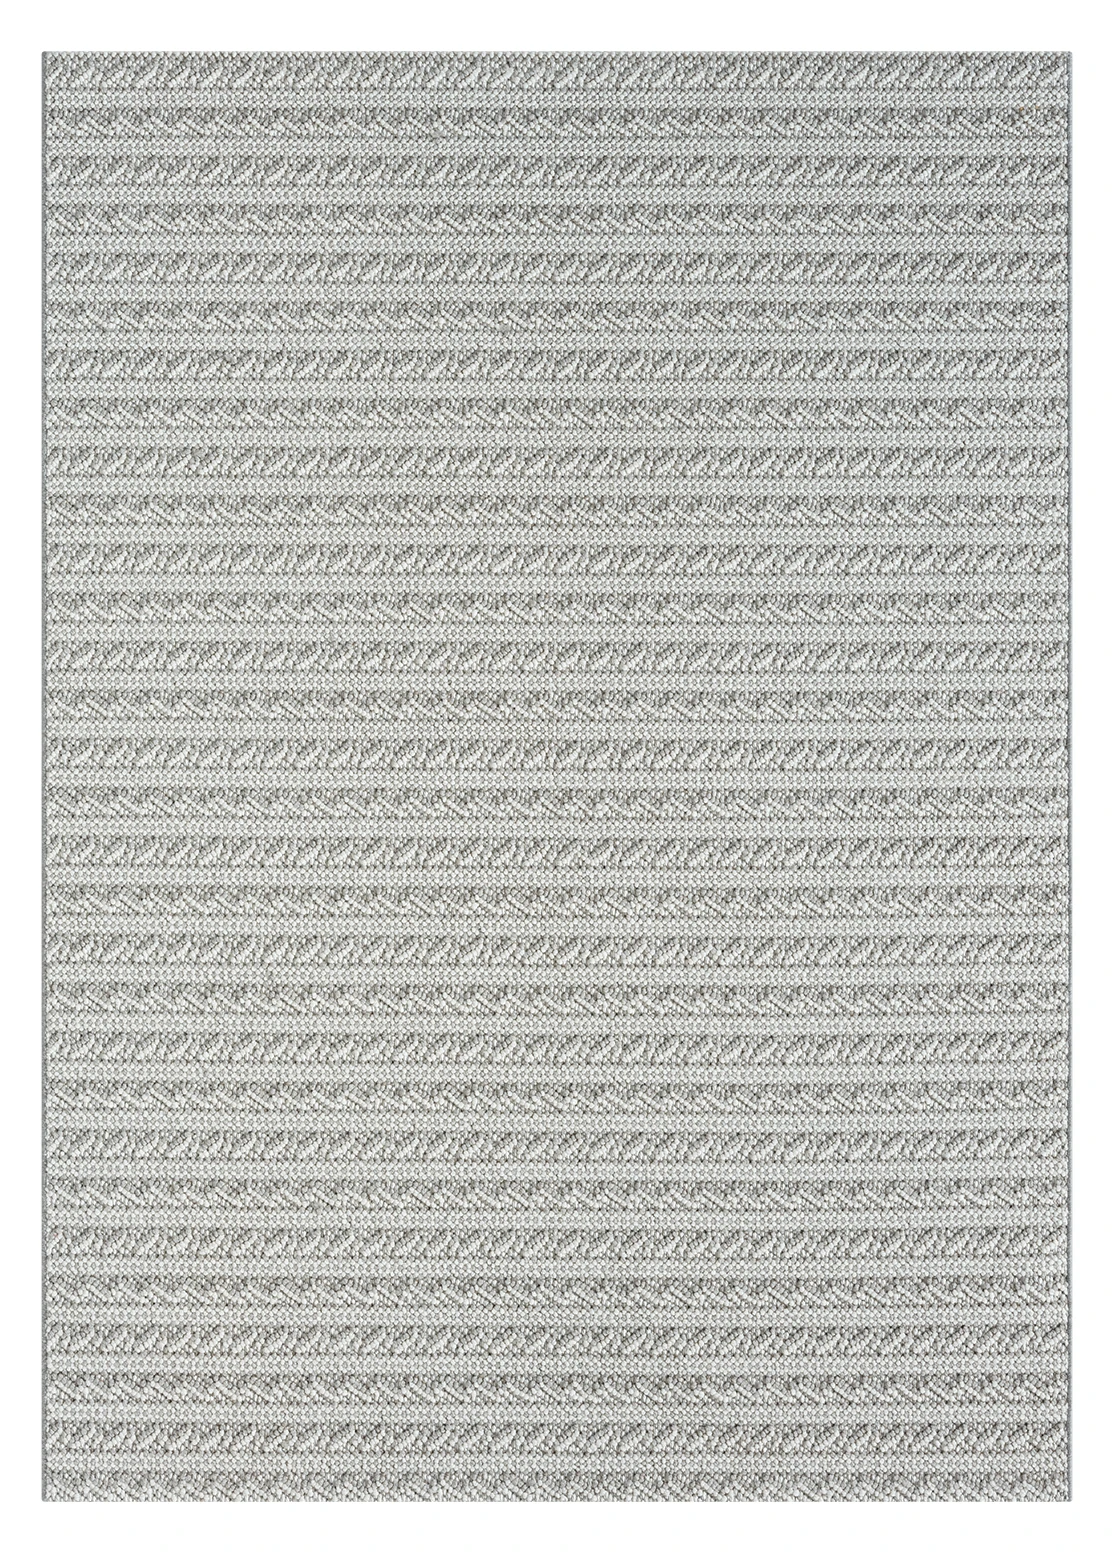 שטיח דגם CALIFORNIA לולאות משולבות צבע אפור לבן   : Thumb 3